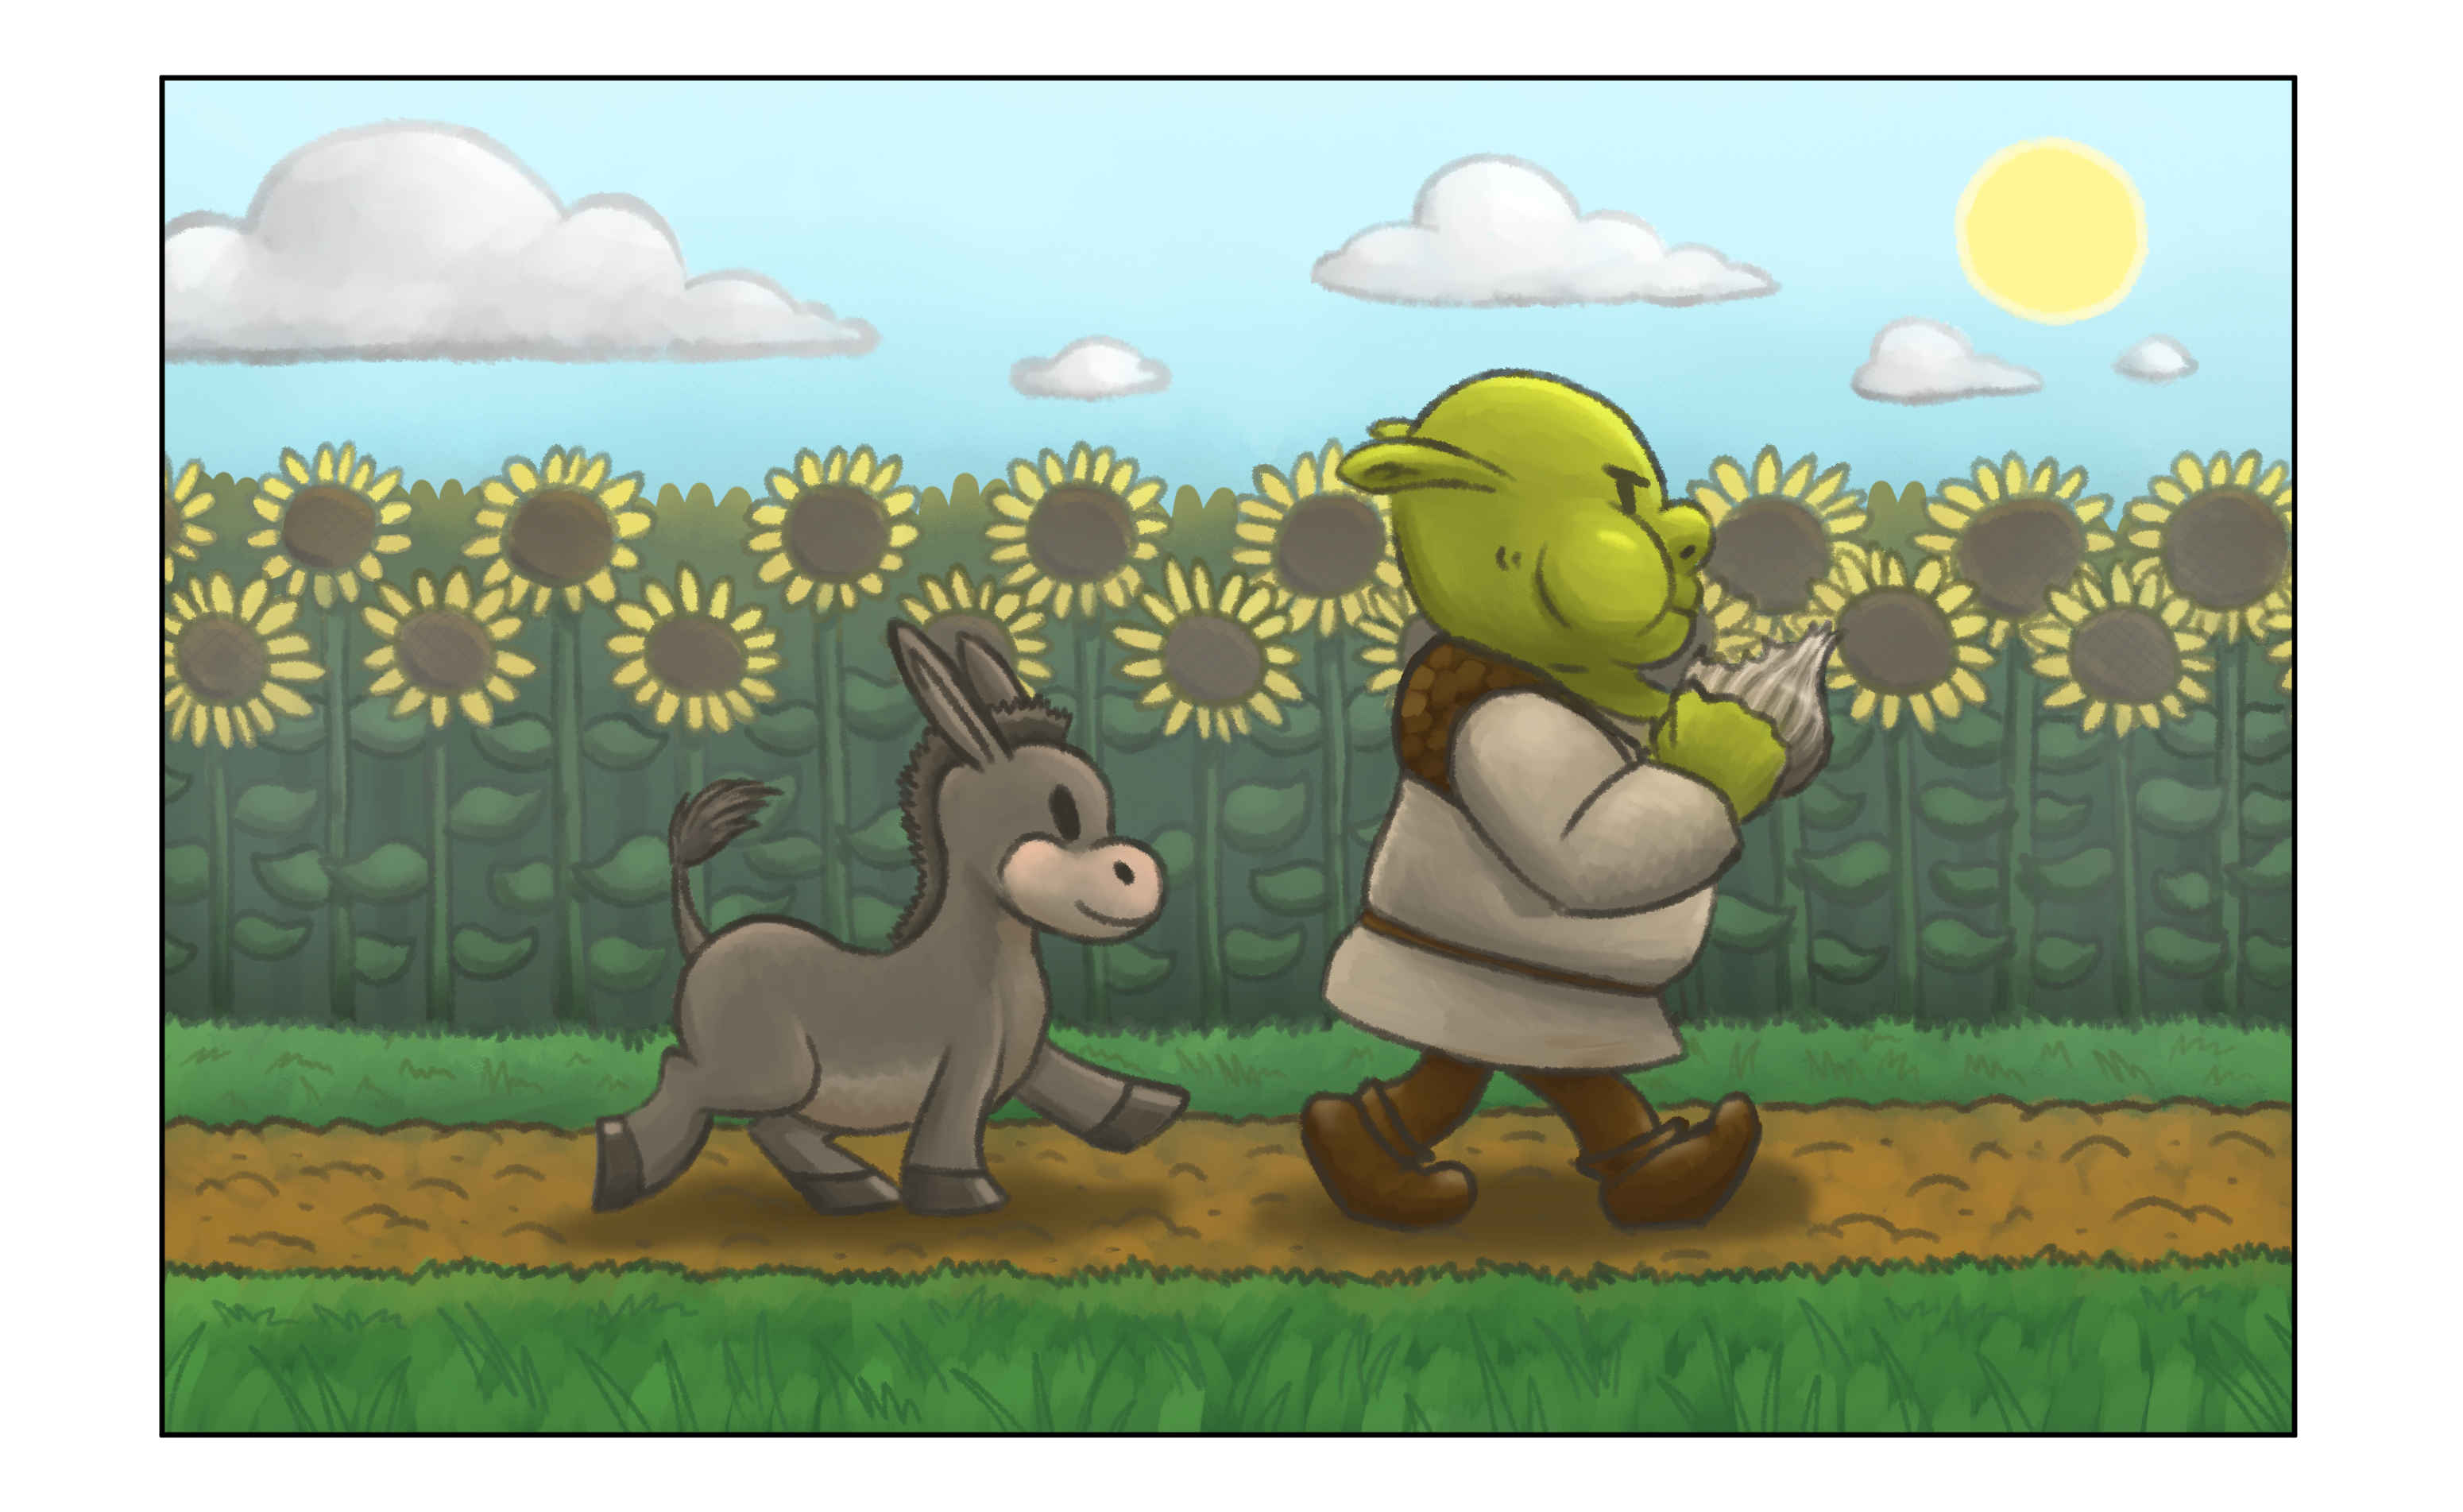 Shrek and Donkey PNG by jakeysamra on DeviantArt